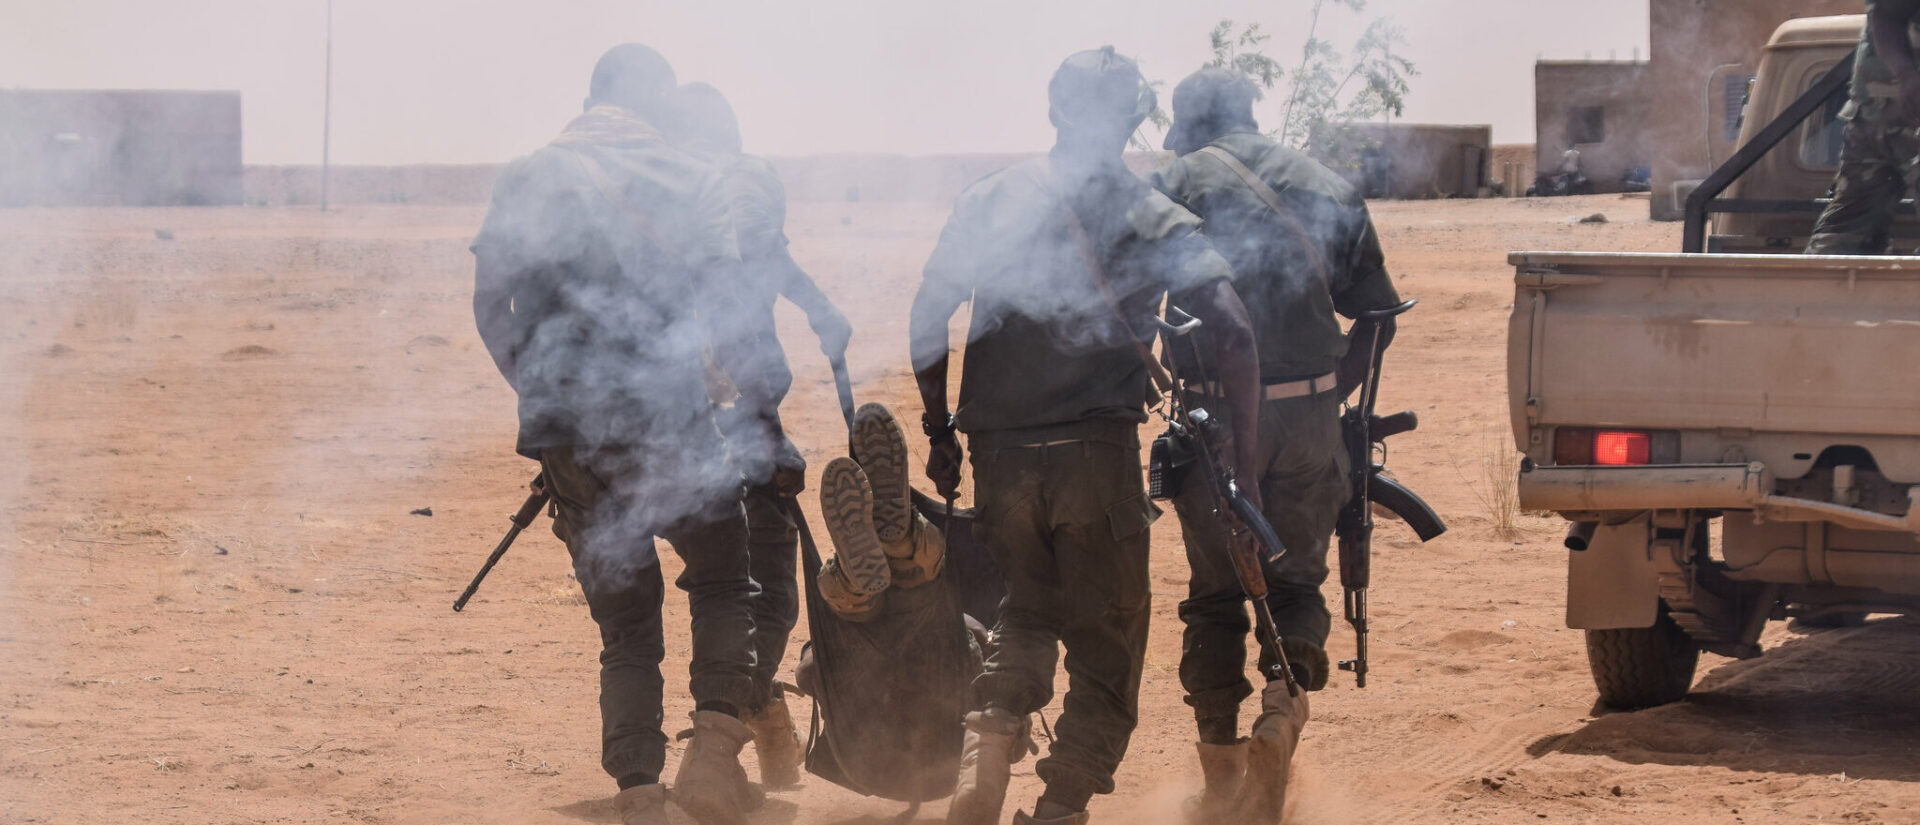 Les enlèvements et les meurtres se multiplient dans plusieurs régions du Burkina Faso | photo d'illustration © USAFRICOM/Flickr/CC BY 2.0